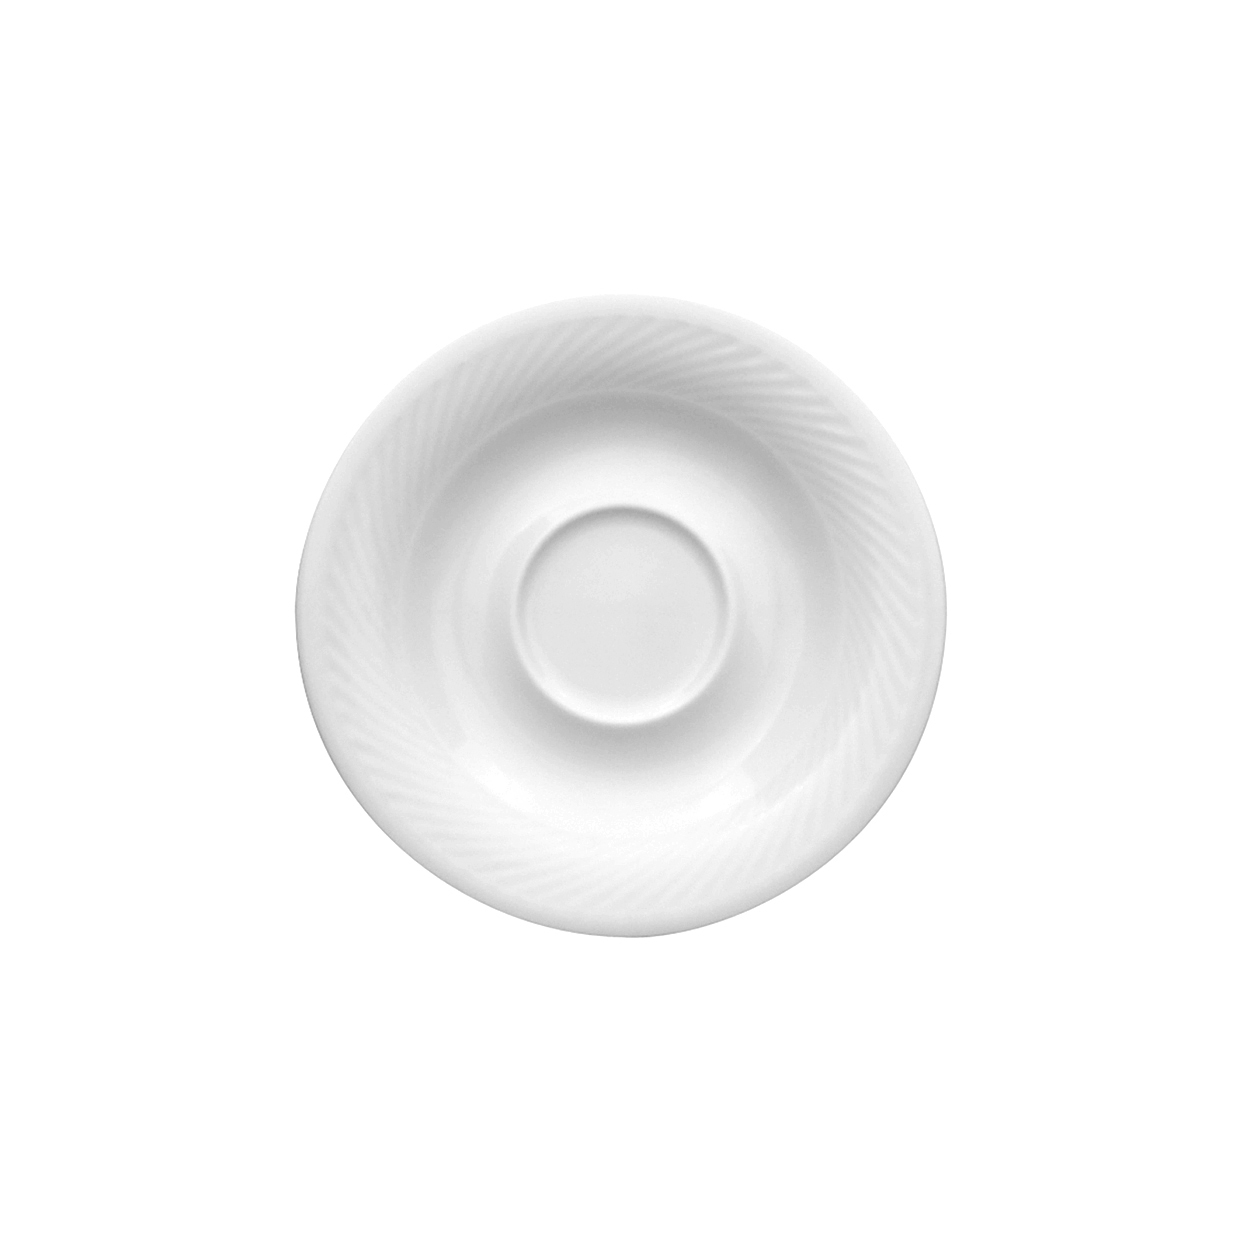 Kombi-Untertasse - Durchmesser 16,0 cm - Form SWING TIME - uni weiß - ohne Obertasse